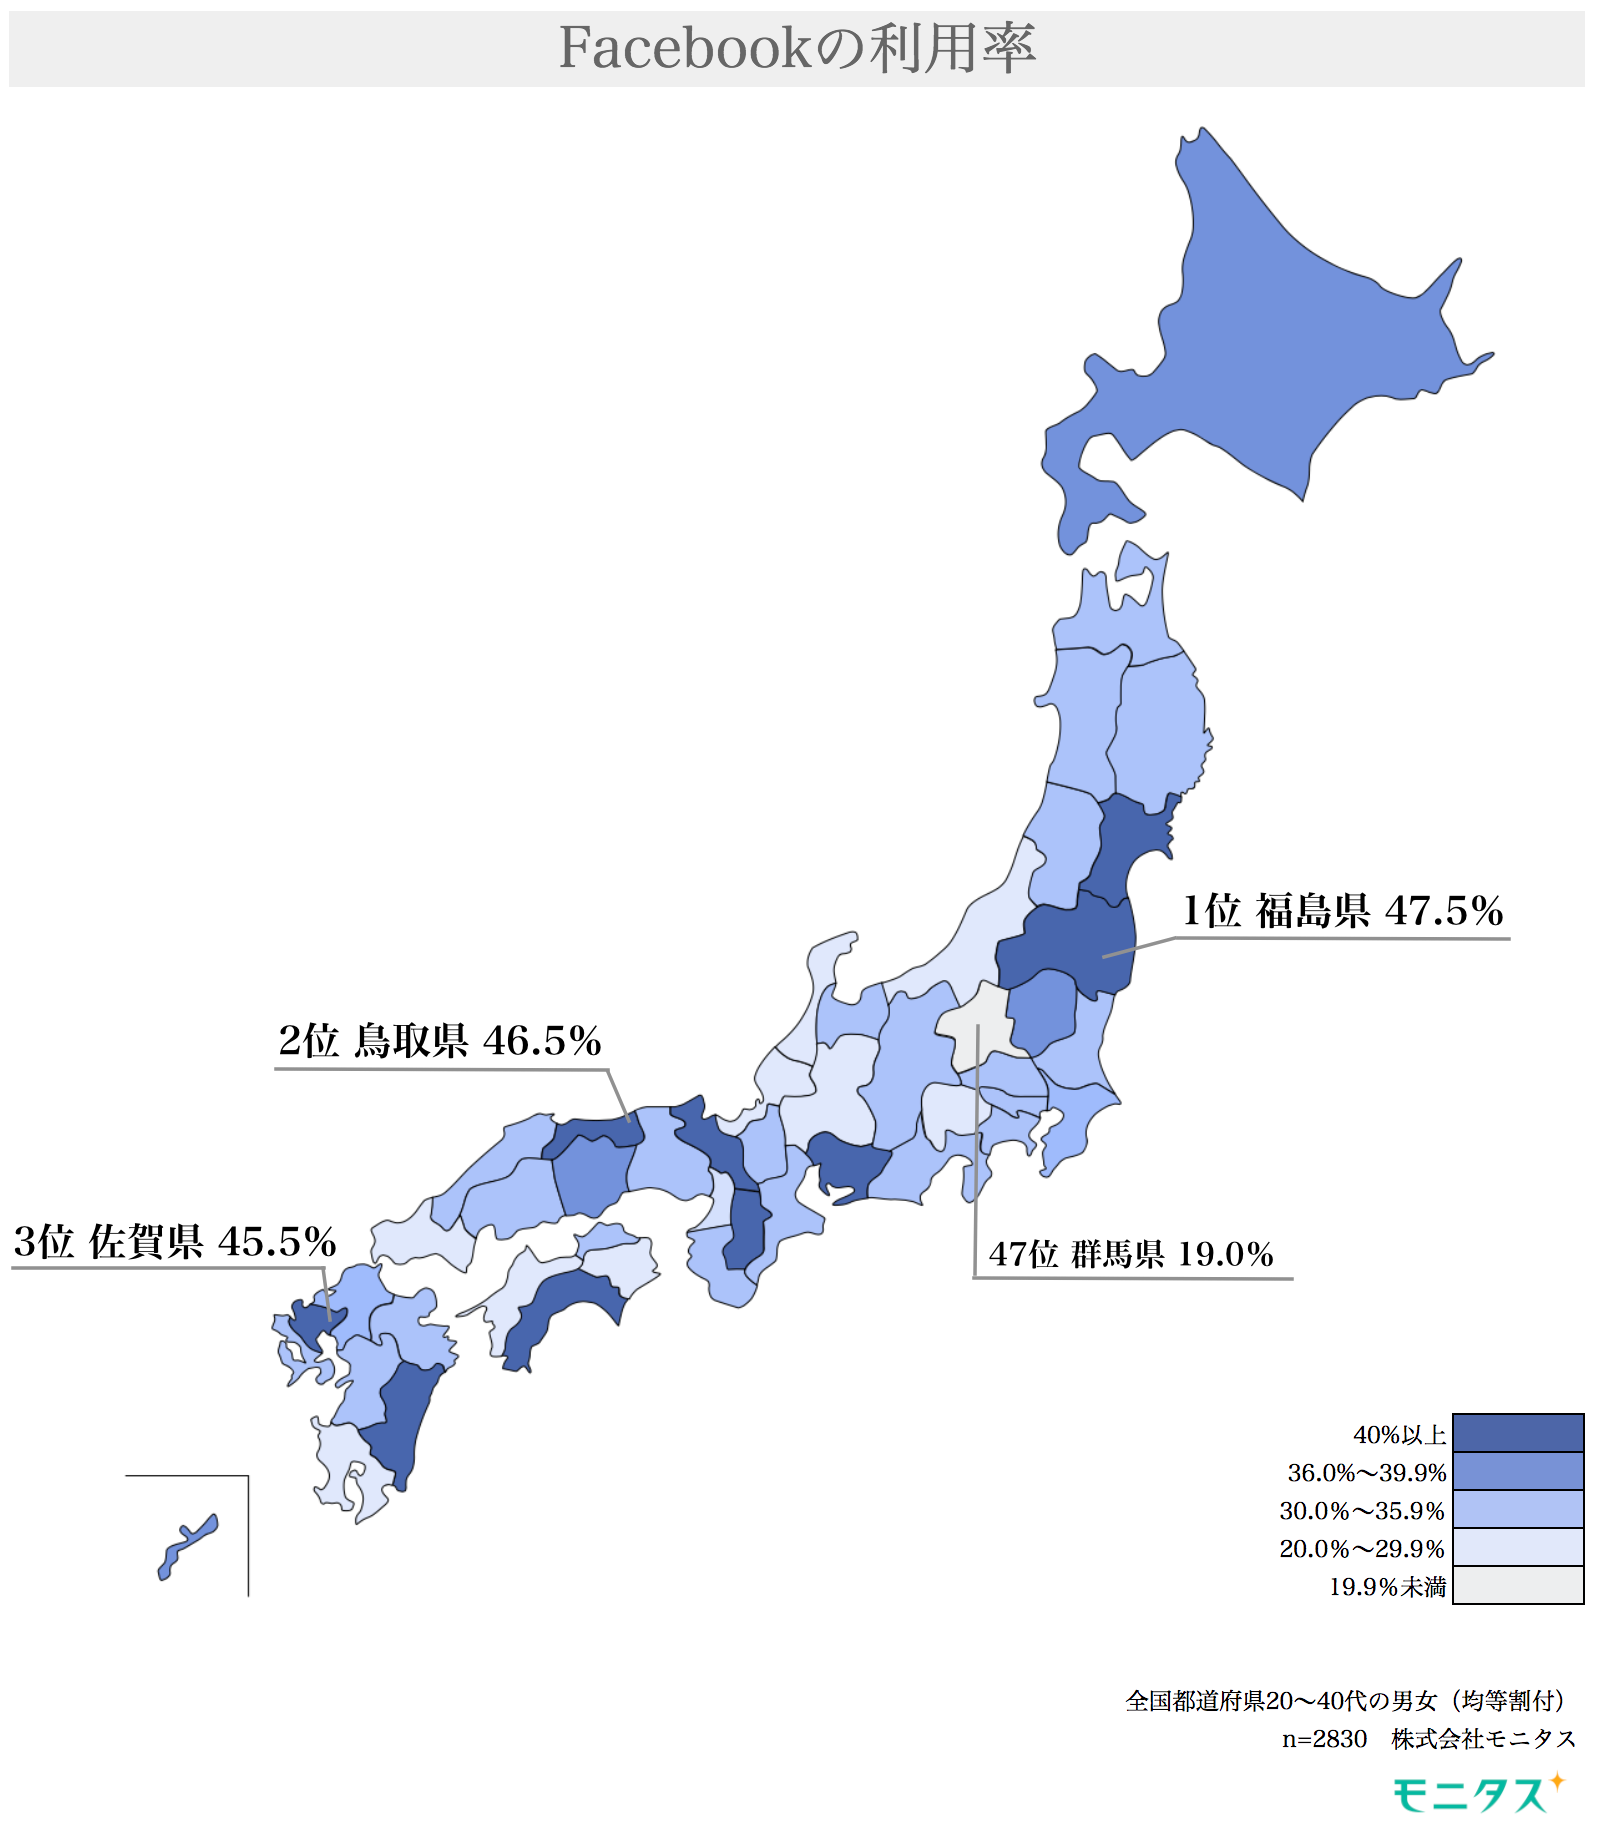 3大sns 都道府県別の利用率 に関する調査で判明する顕著な県民性